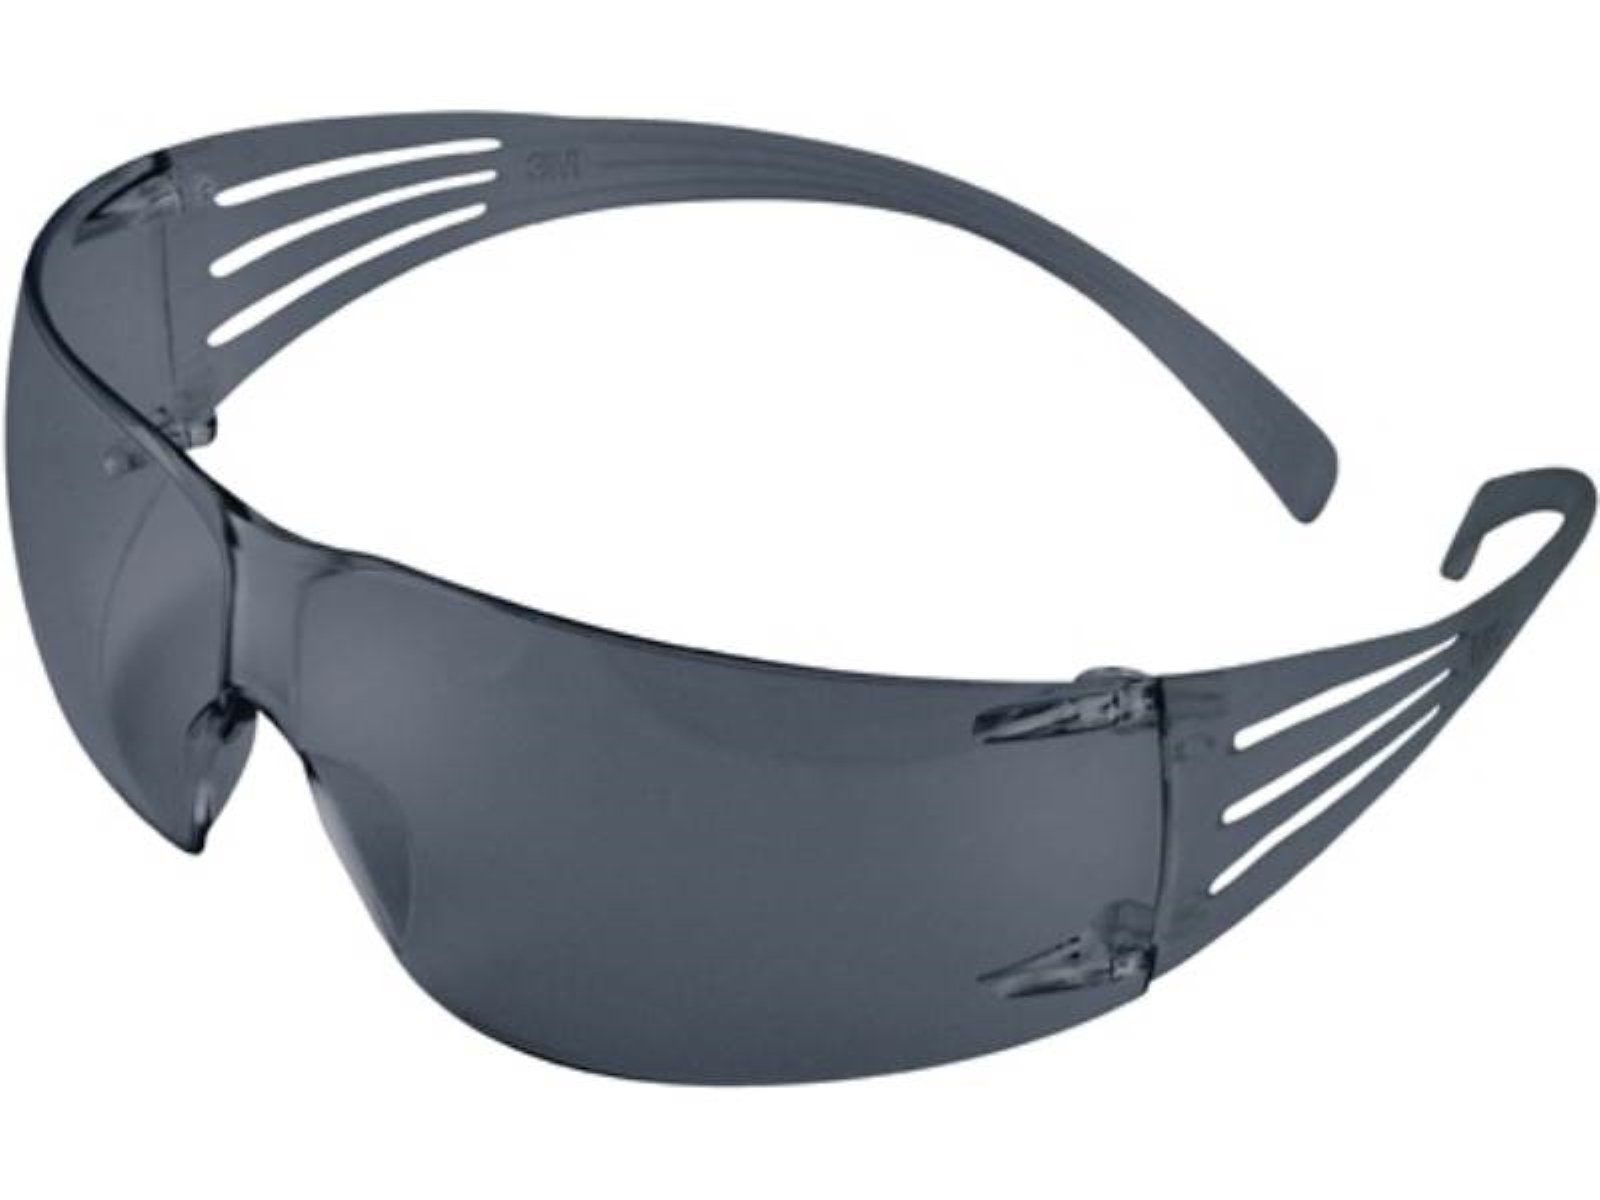 3M Arbeitsschutzbrille Schutzbrille SecureFit-SF200 EN 166,EN 170 Bügel grau,Scheibe grau PC 3M EN 166 EN 170 (AS/AF, UV) · optische Klasse 1 · besteht aus rahmenlosen Gläsern · spezielle 3M-Technologie der Bügel sorgt für Druckverteilung, für einen sicheren und bequemen Sitz ·